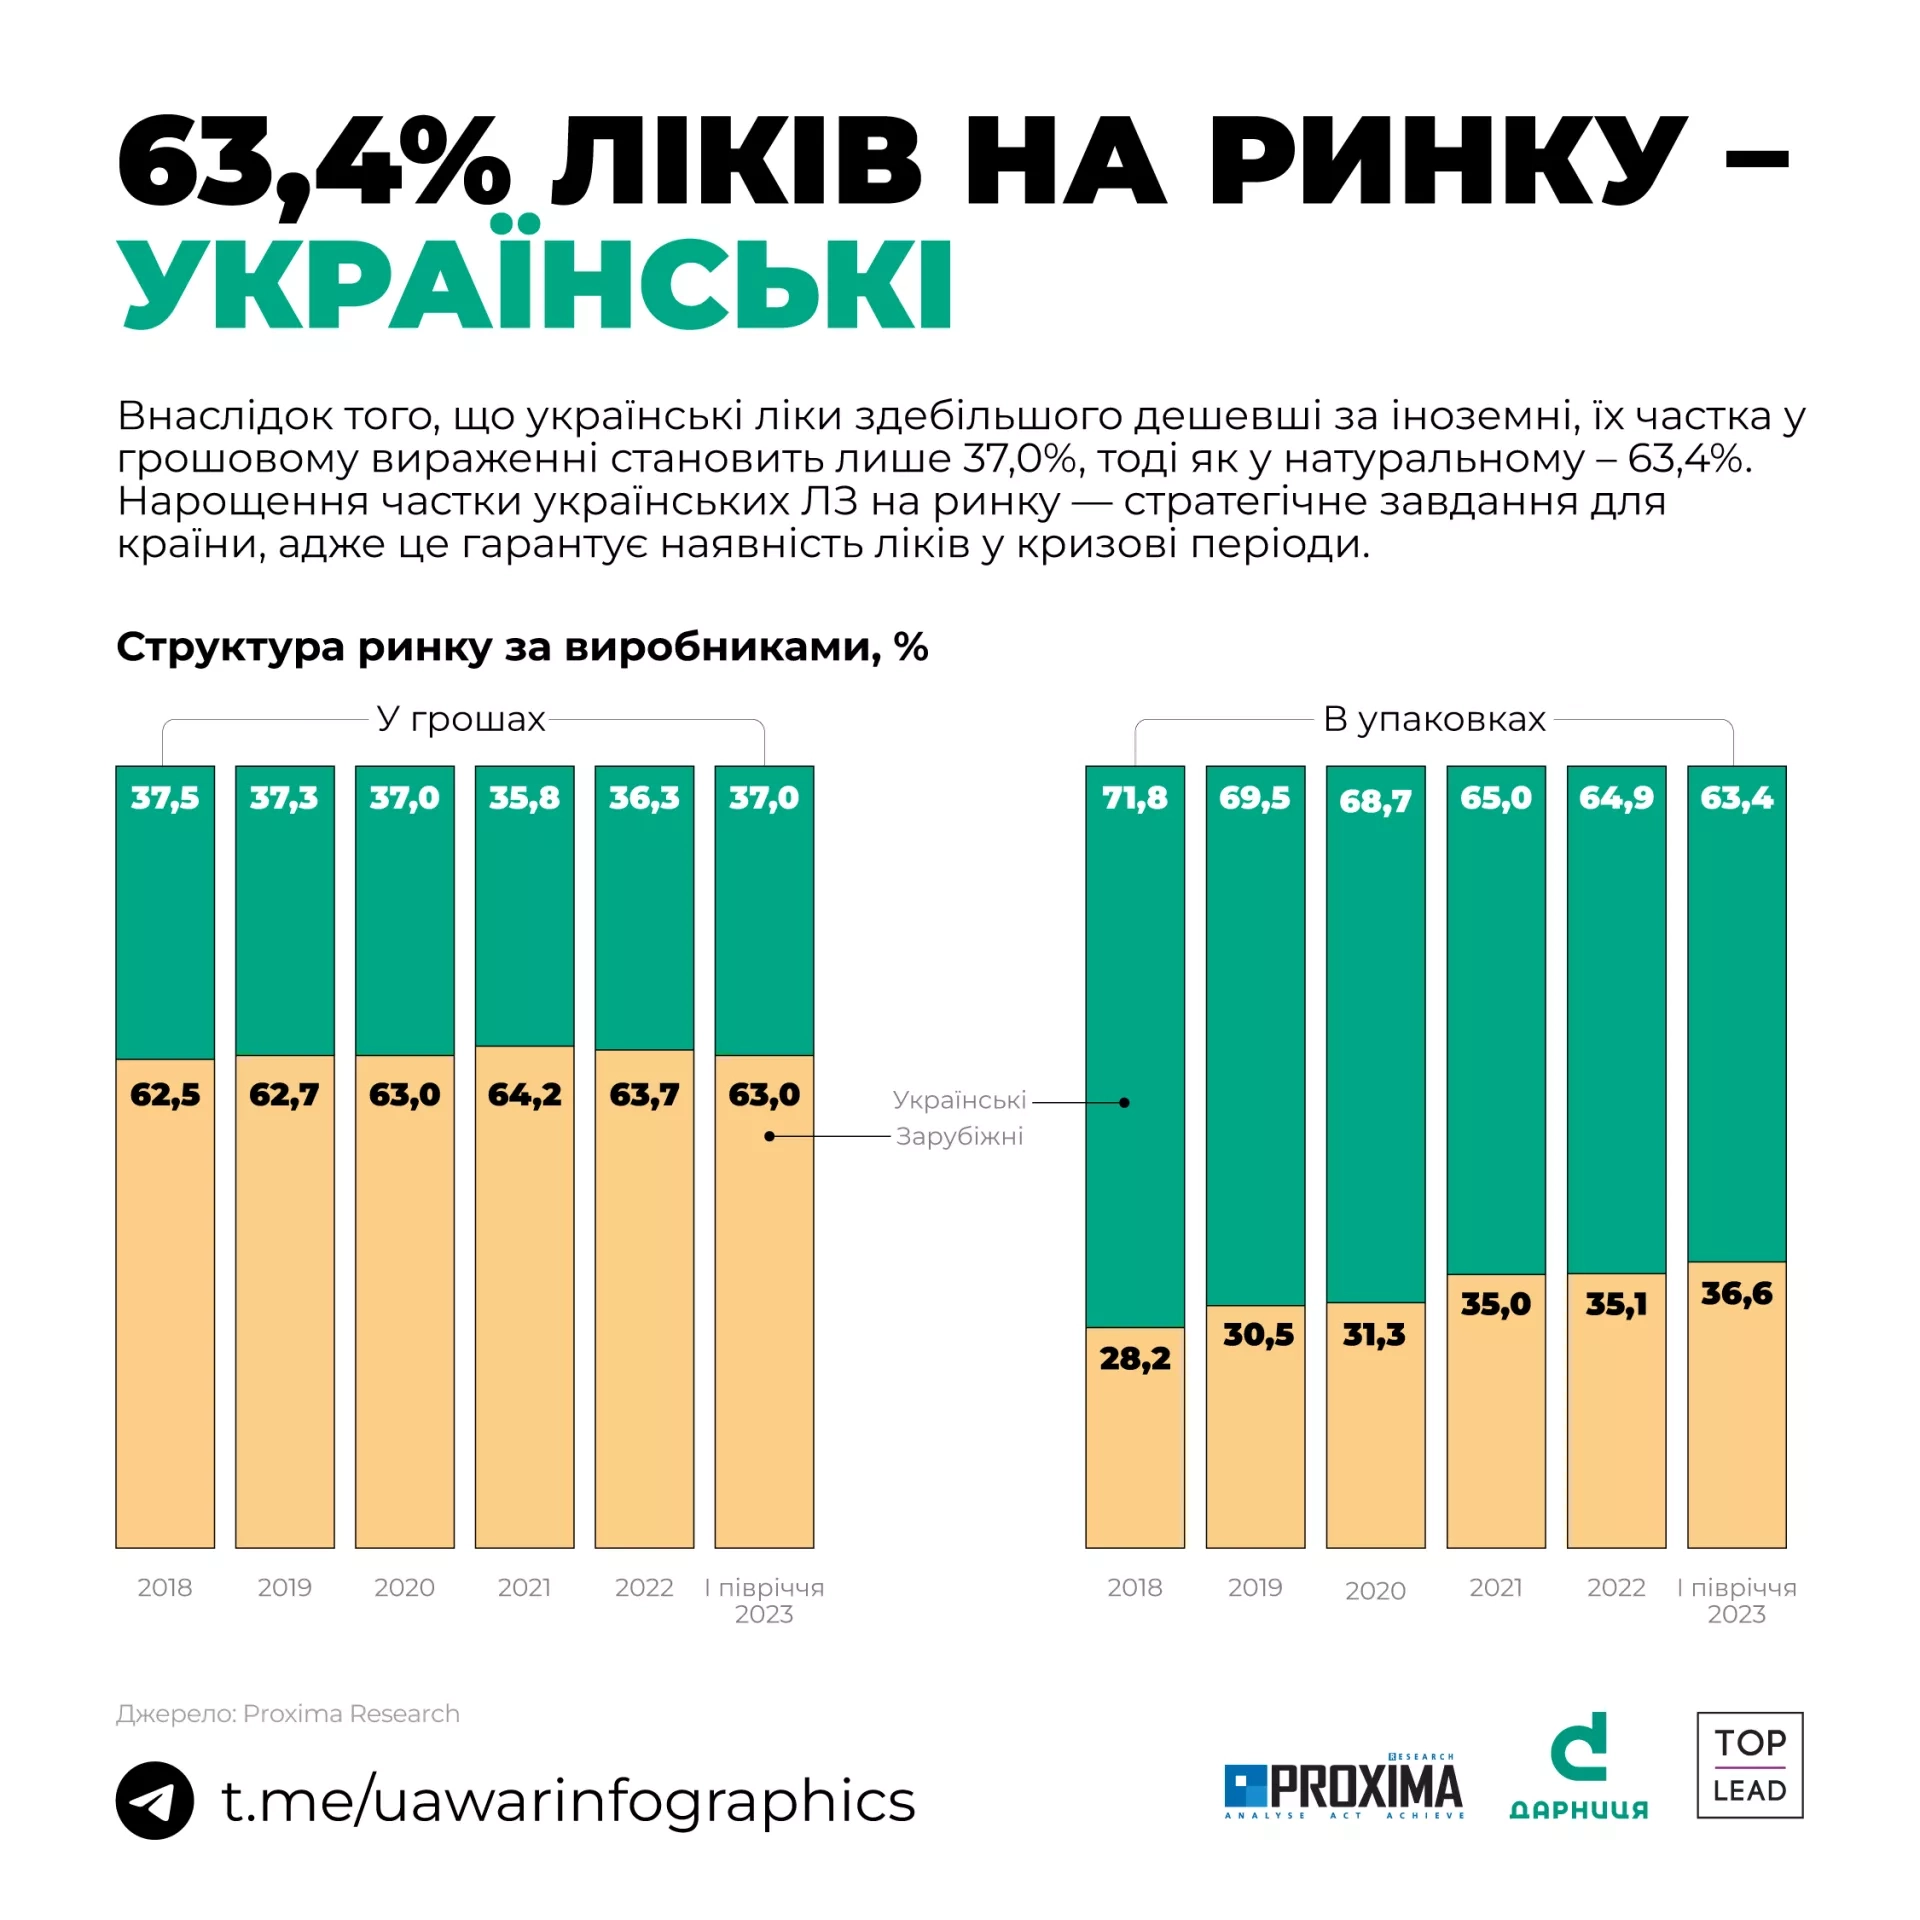 «Дарниця» розповіла про топ-3 тенденції на фармацевтичному ринку України